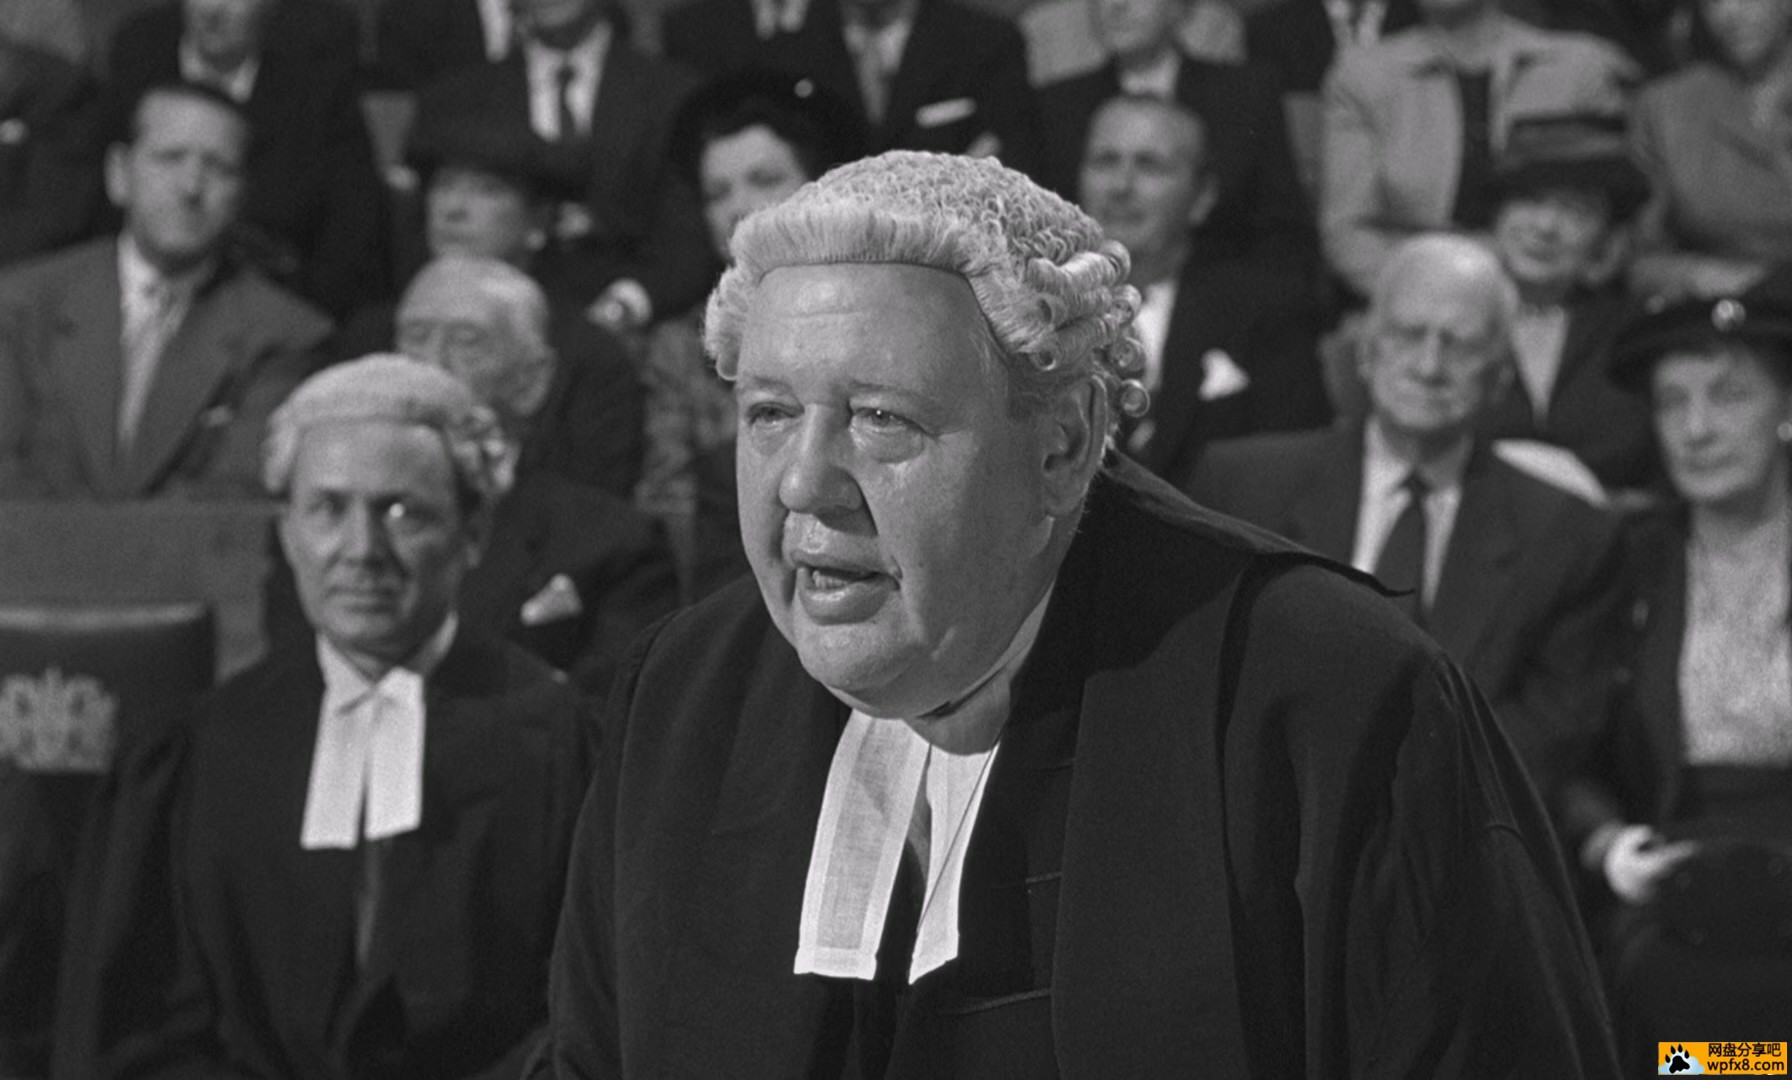 Witness.for.the.Prosecution.1957.1080p.BluRay.x265.mkv_010941.677.jpg